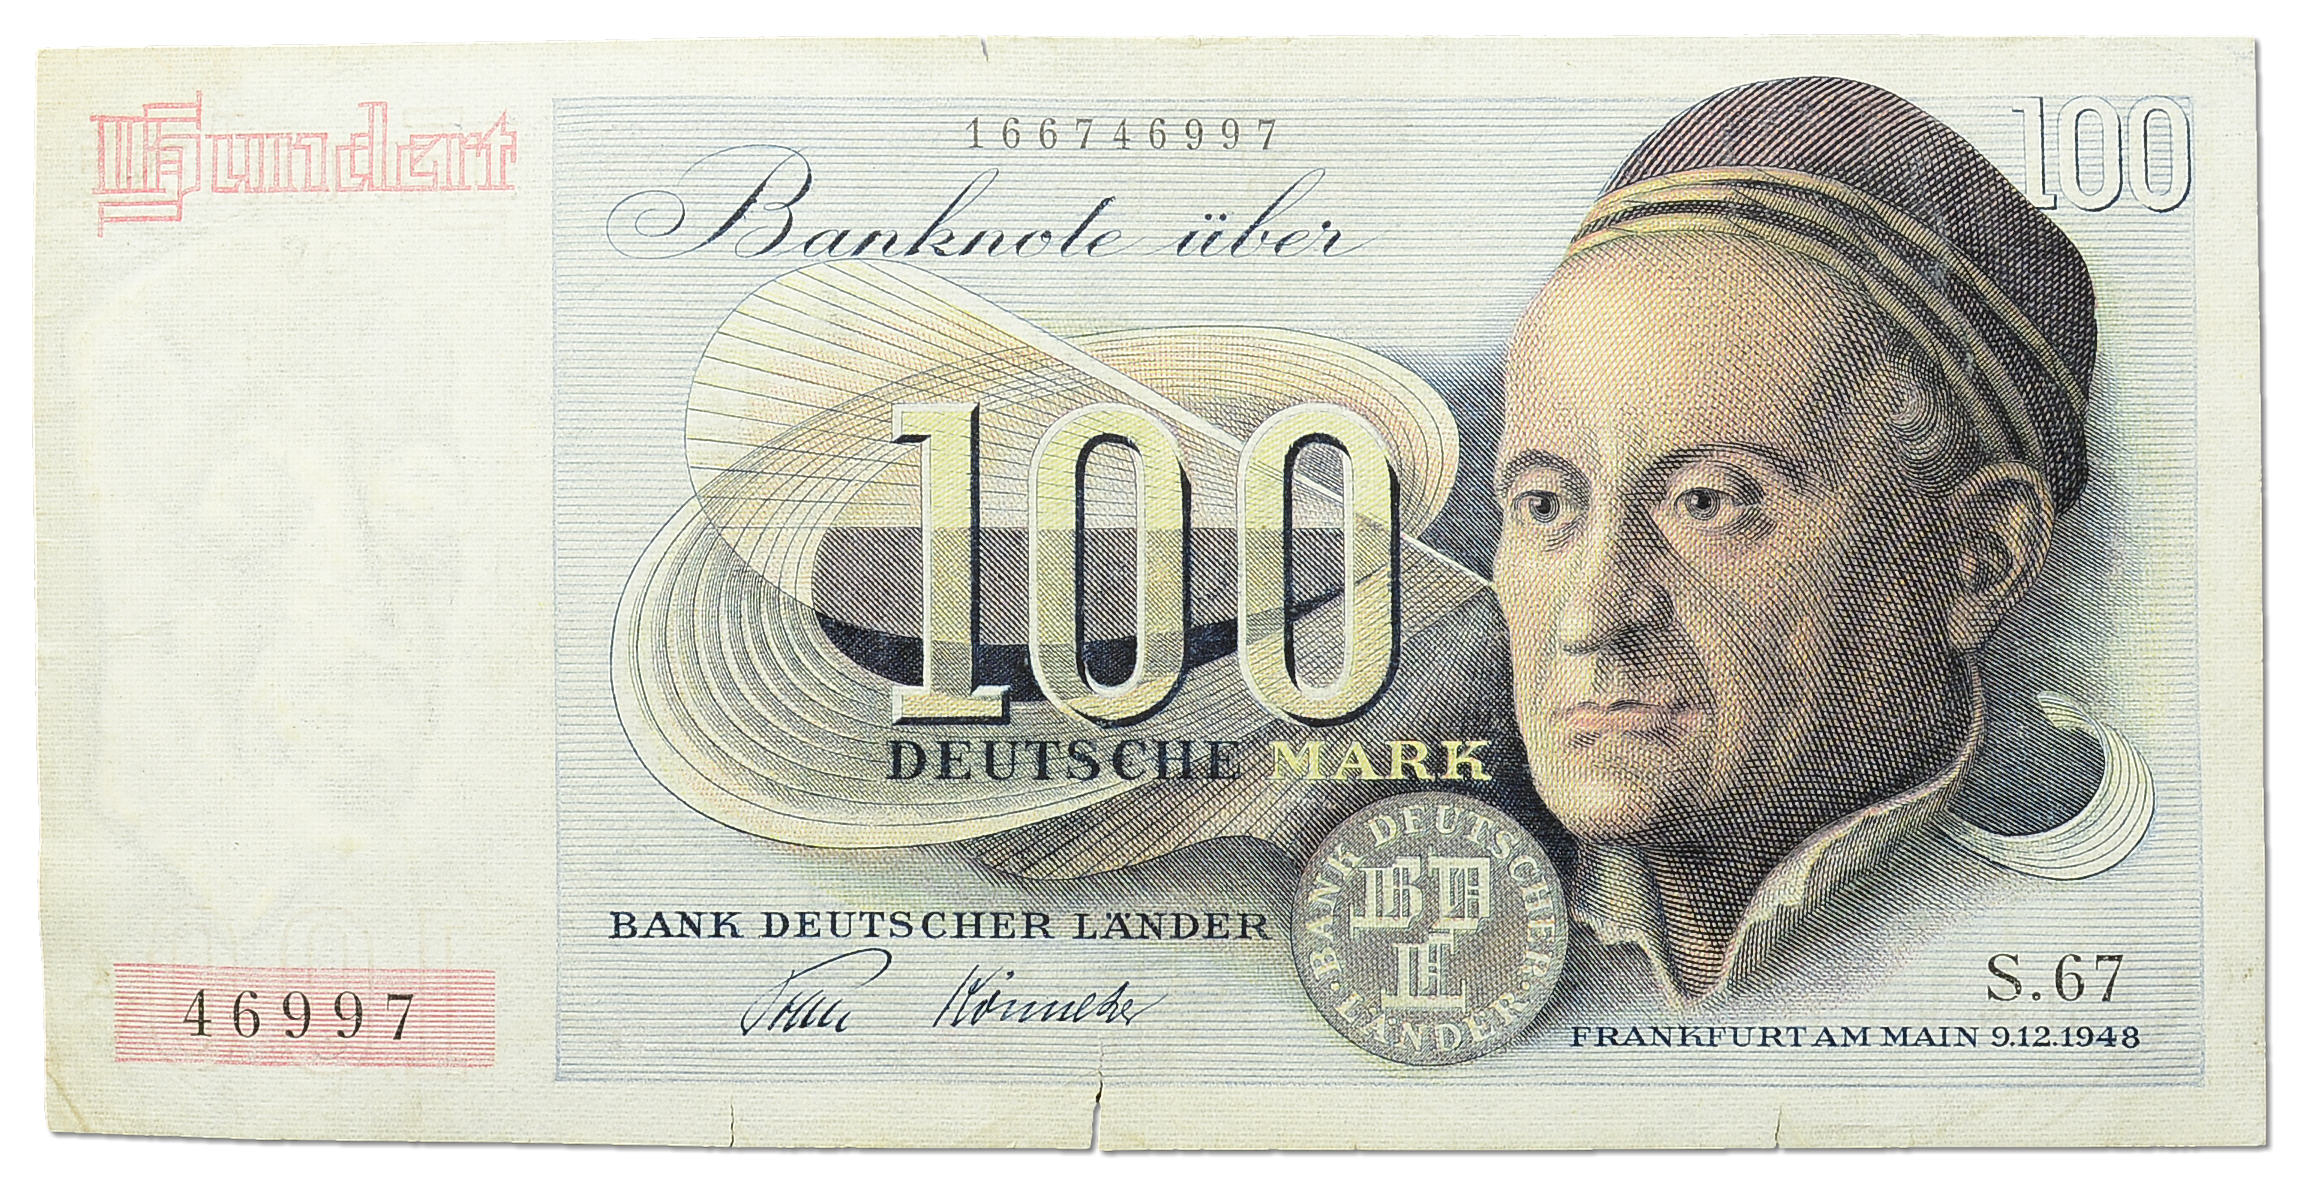 Deutsche mark. Купюра 100 Дойч марок. Дойч марки ФРГ. Марка ФРГ 1948. Немецкая марка (Deutsche Mark).